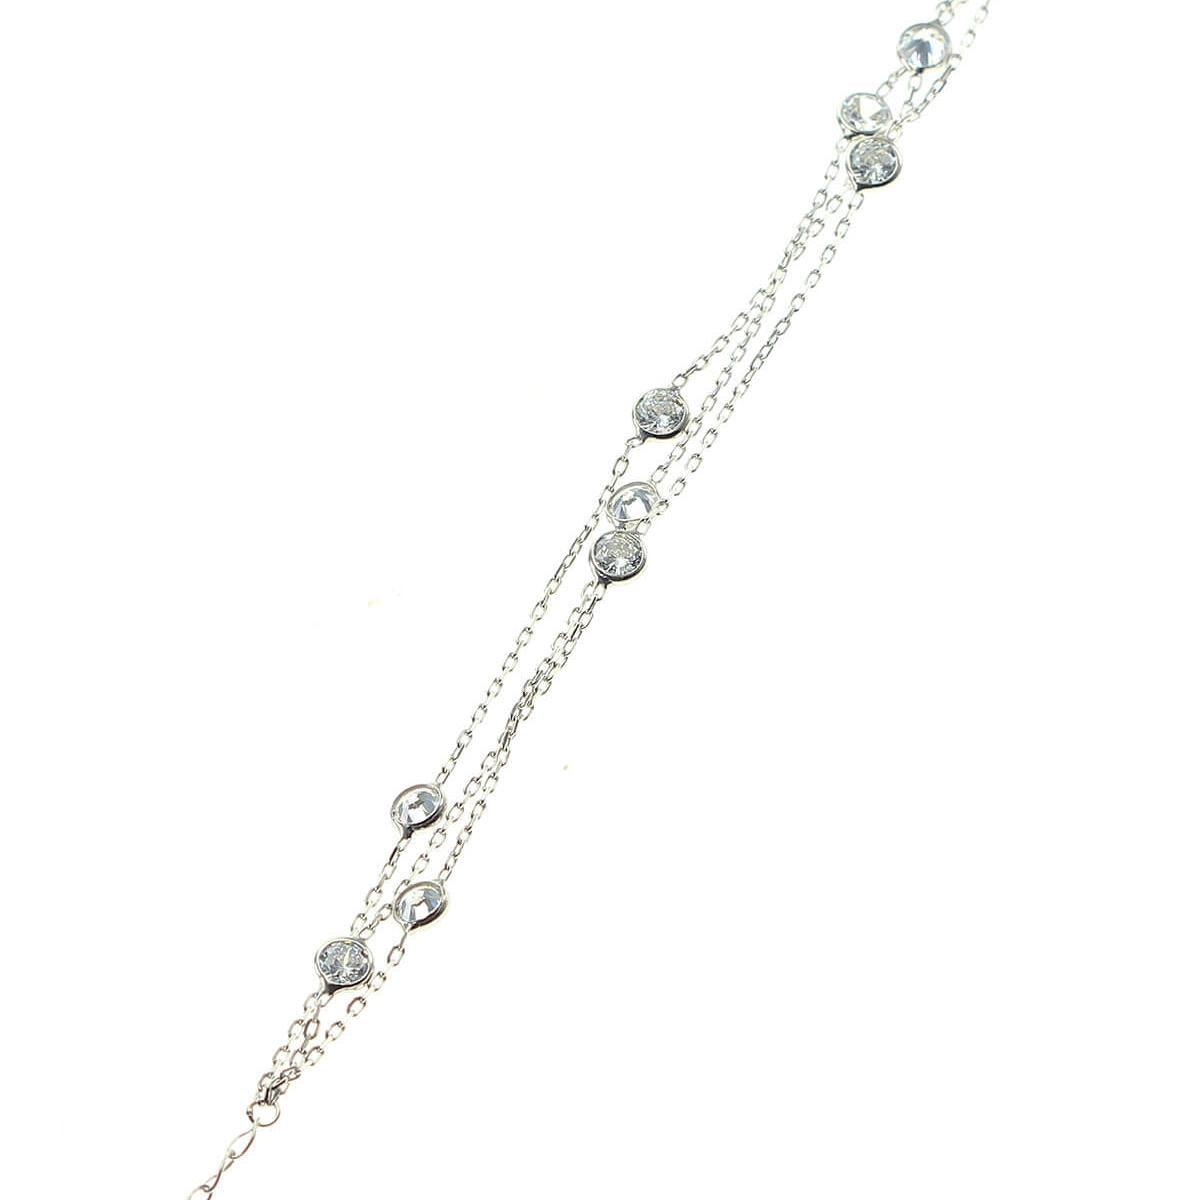 Zirconia Birthstone Silver Bracelet • April Birthstone Silver Bracelet - Trending Silver Gifts